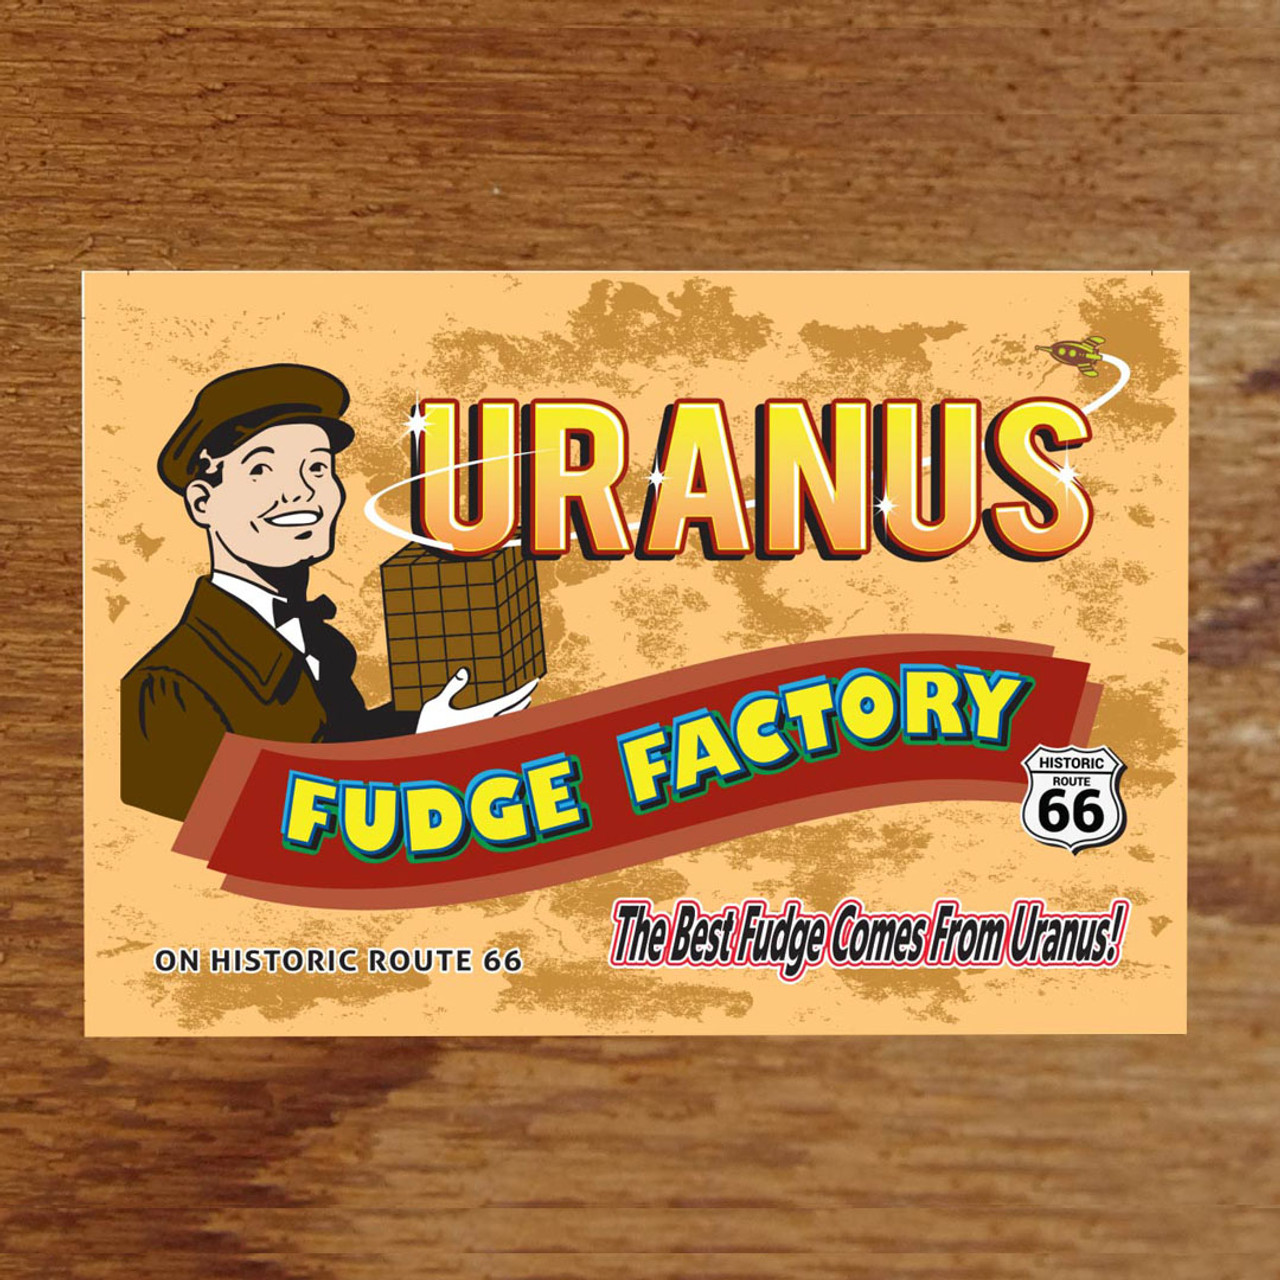 Uranus-Fudge-Factory-Post-Card__04439.1607033103.jpg